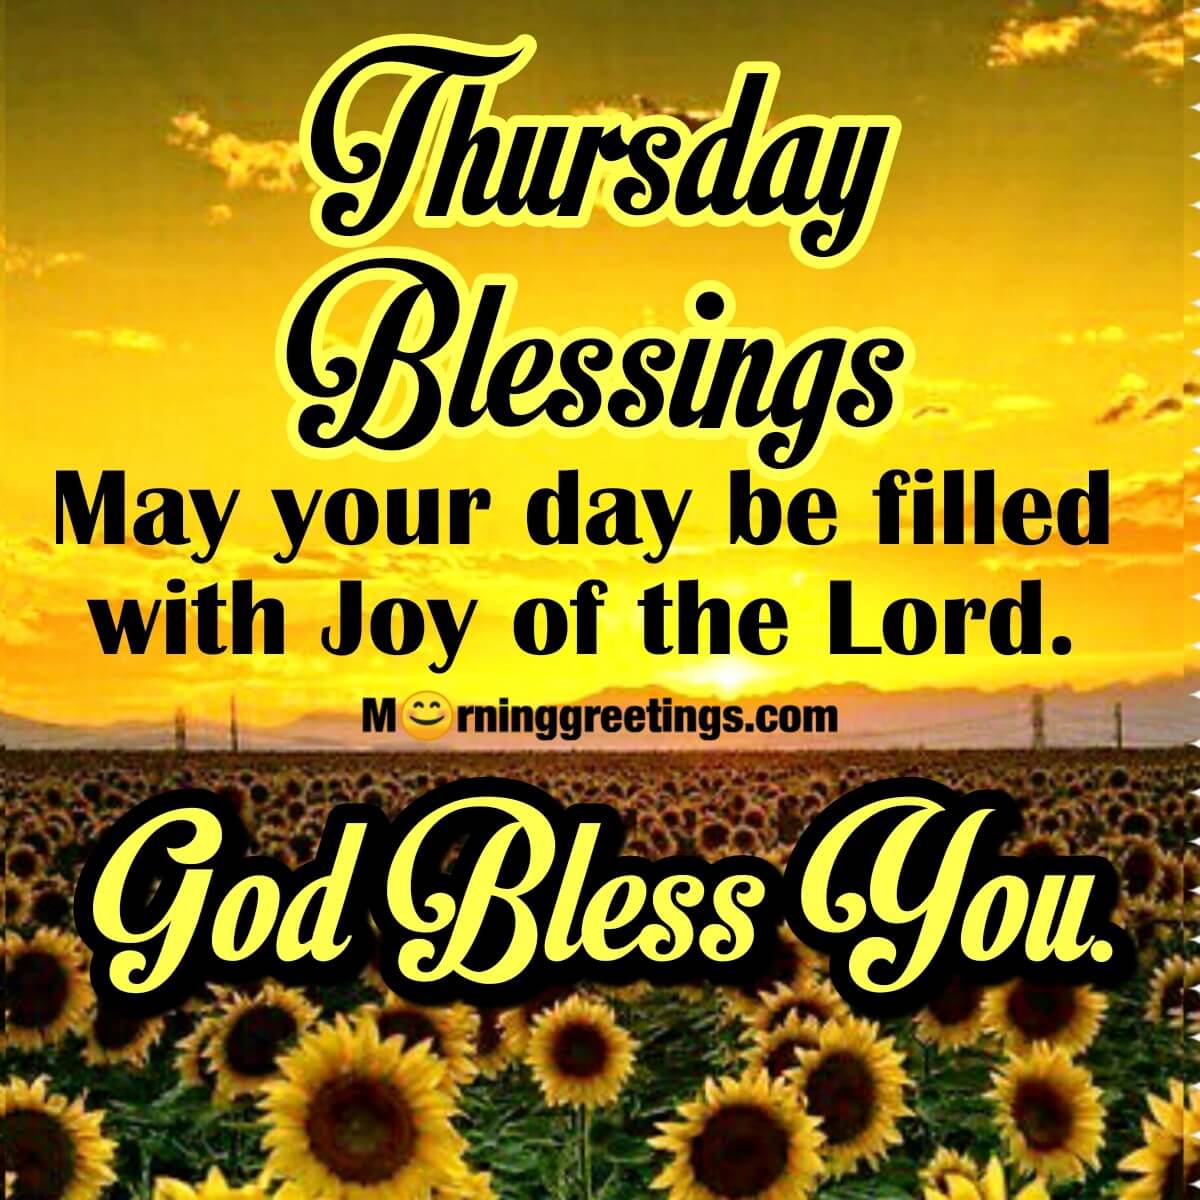 Thursday Blessings God Bless You